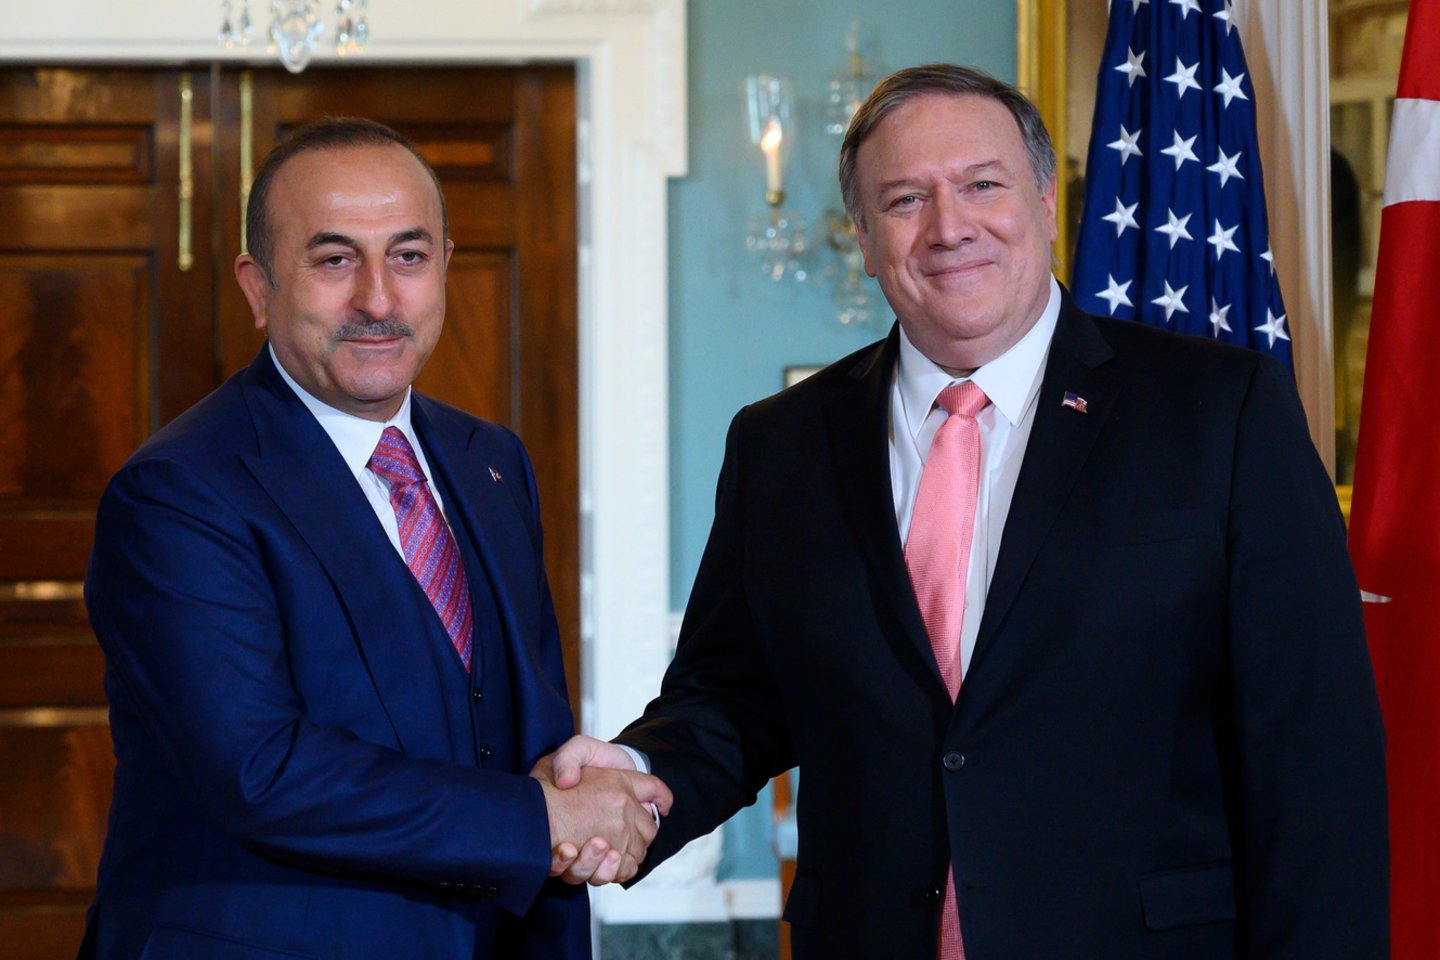  Ankara ketvirtadienį apkaltino JAV Valstybės departamentą skelbiant klaidinančius pareiškimus apie amerikiečių ir turkų diplomatijos vadovų susitikimą, per kurį buvo aptariami įtempti abiejų NATO sąjungininkių santykiai.<br> AFP/Scanpix nuotr.